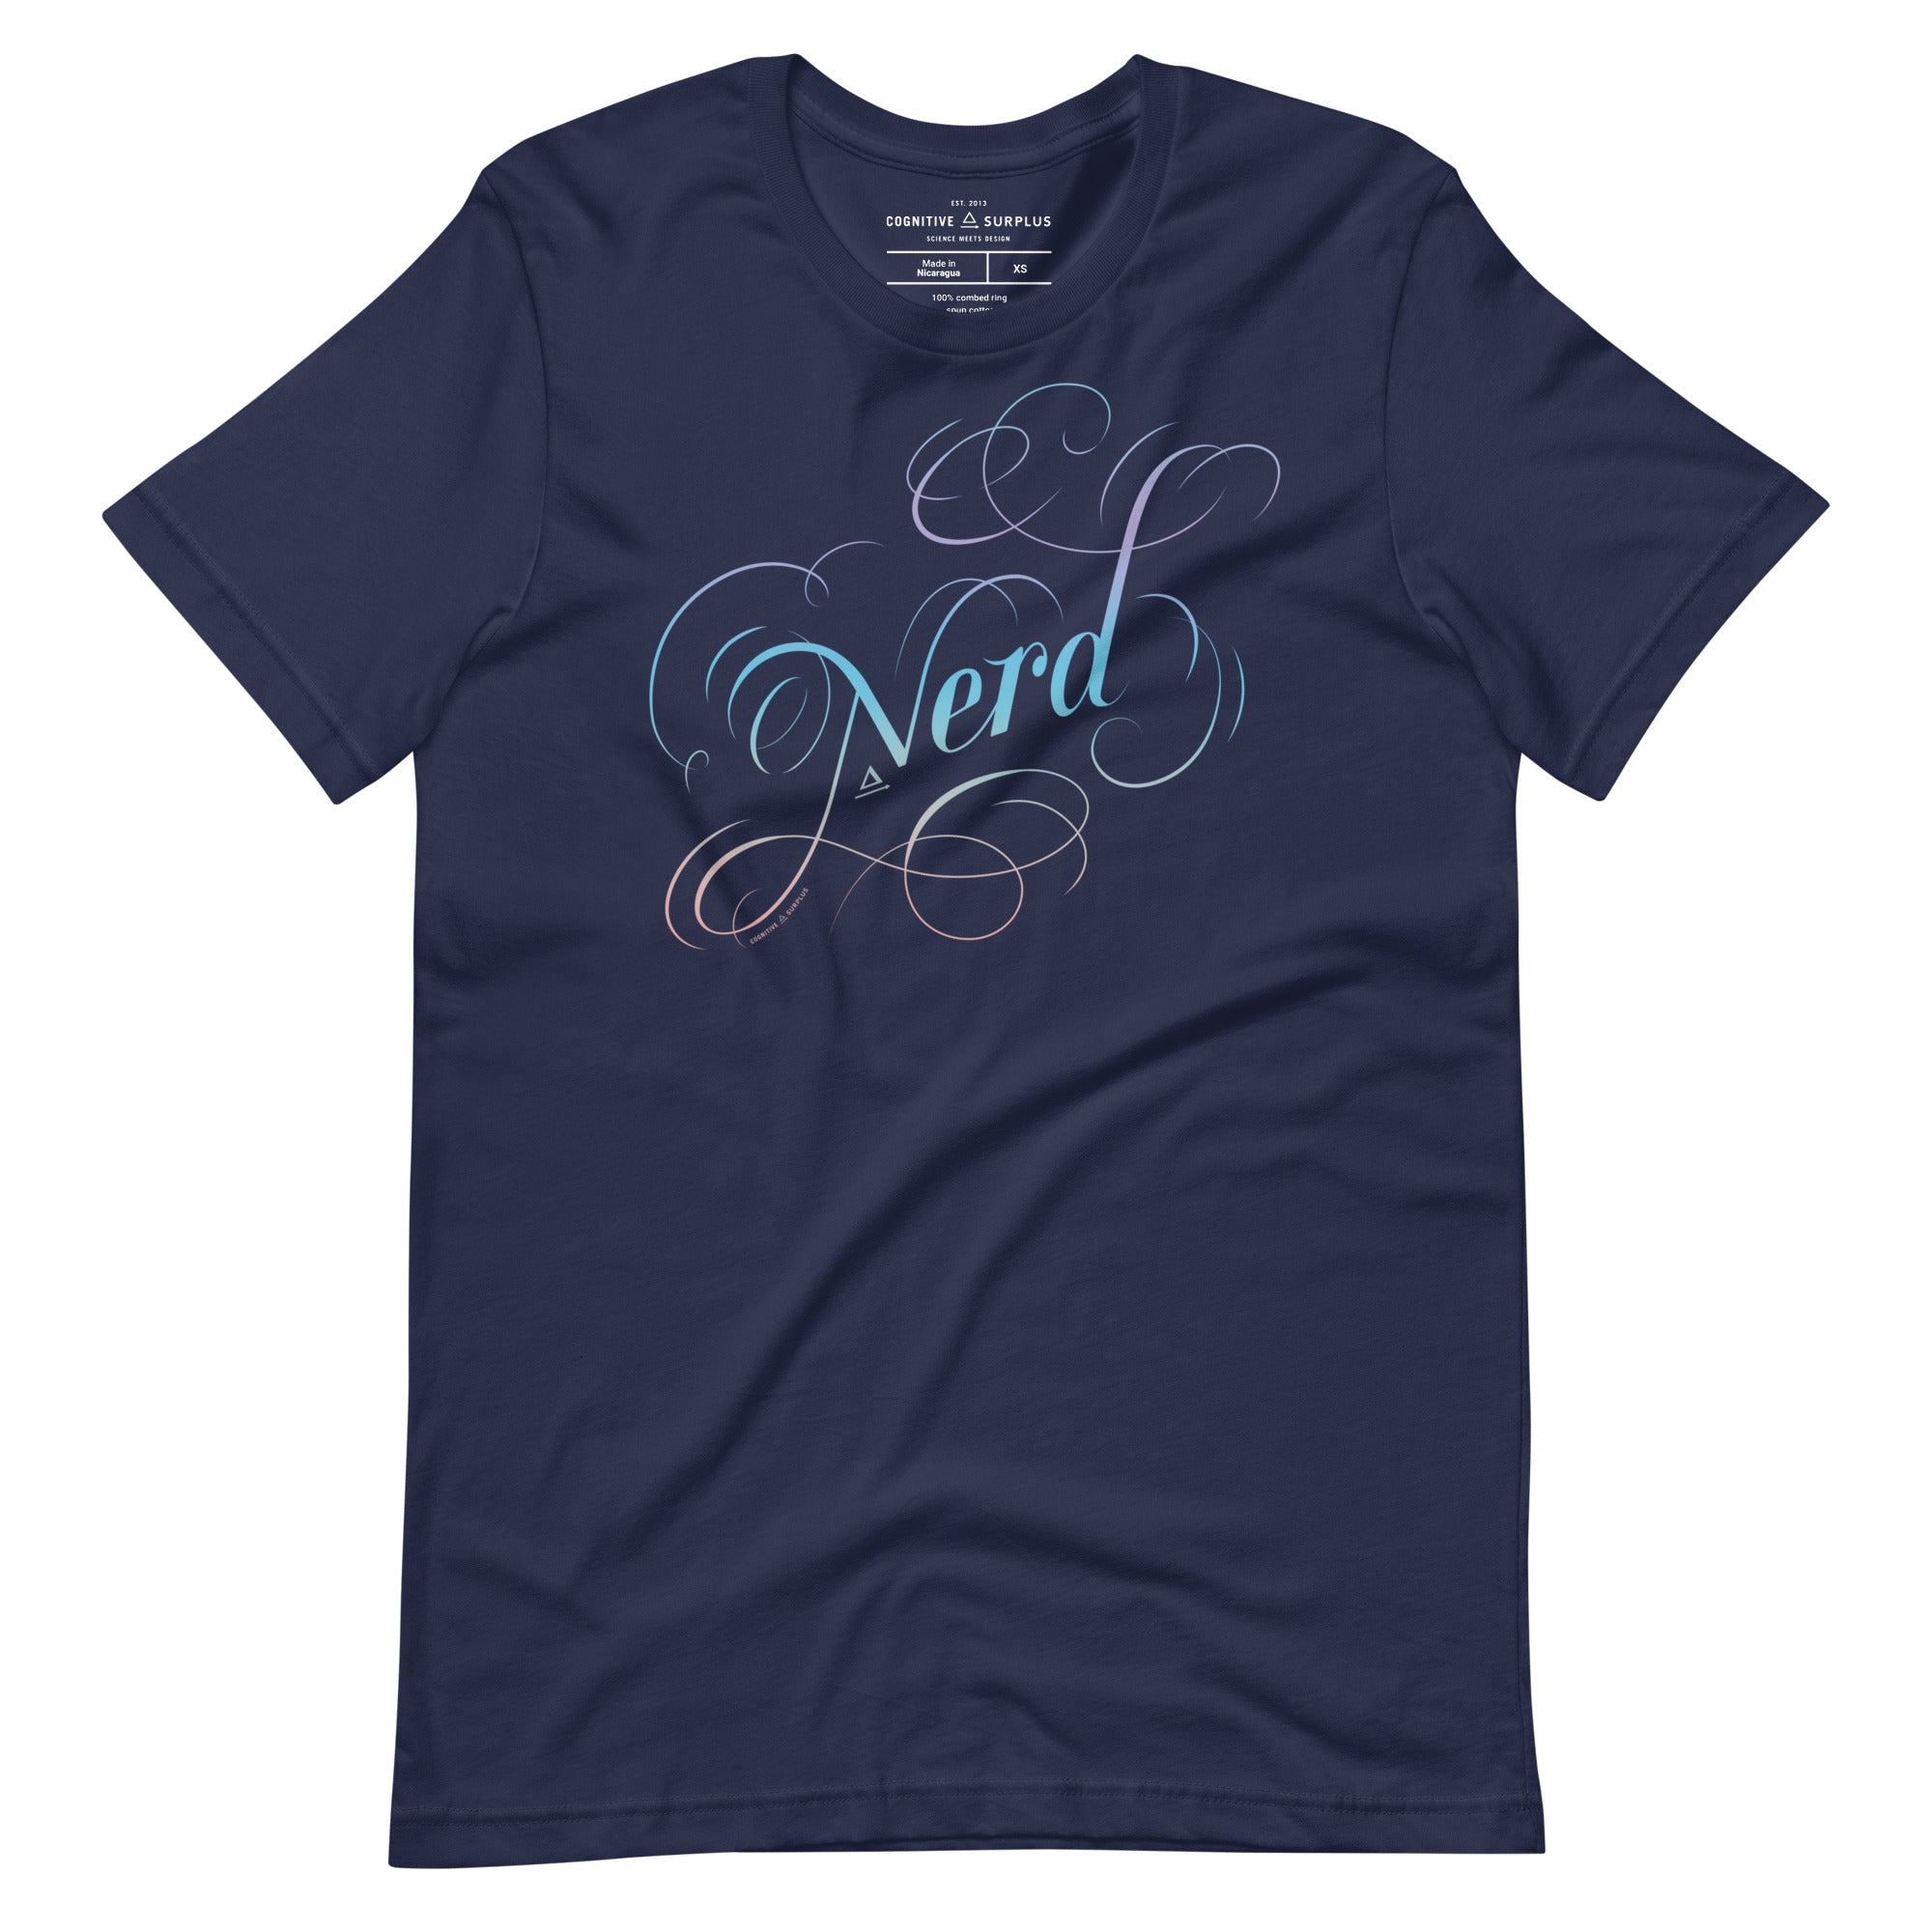 unisex-staple-t-shirt-navy-front-654a77b93f599.jpg